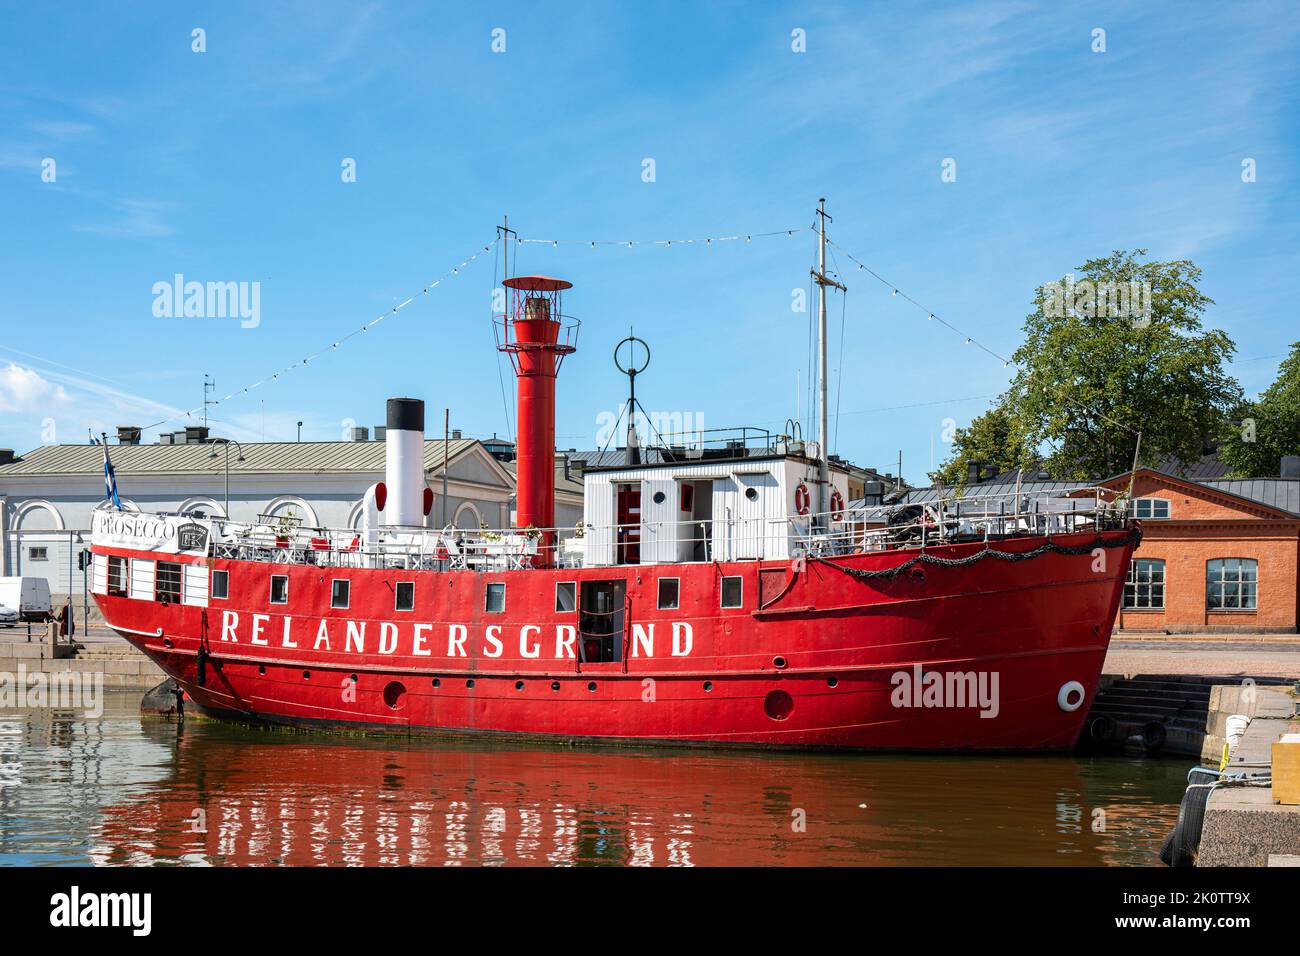 Nave ristorante Relandergrund, ex nave leggera, ormeggiata nel distretto di Kruunhaka, Helsinki, Finlandia Foto Stock